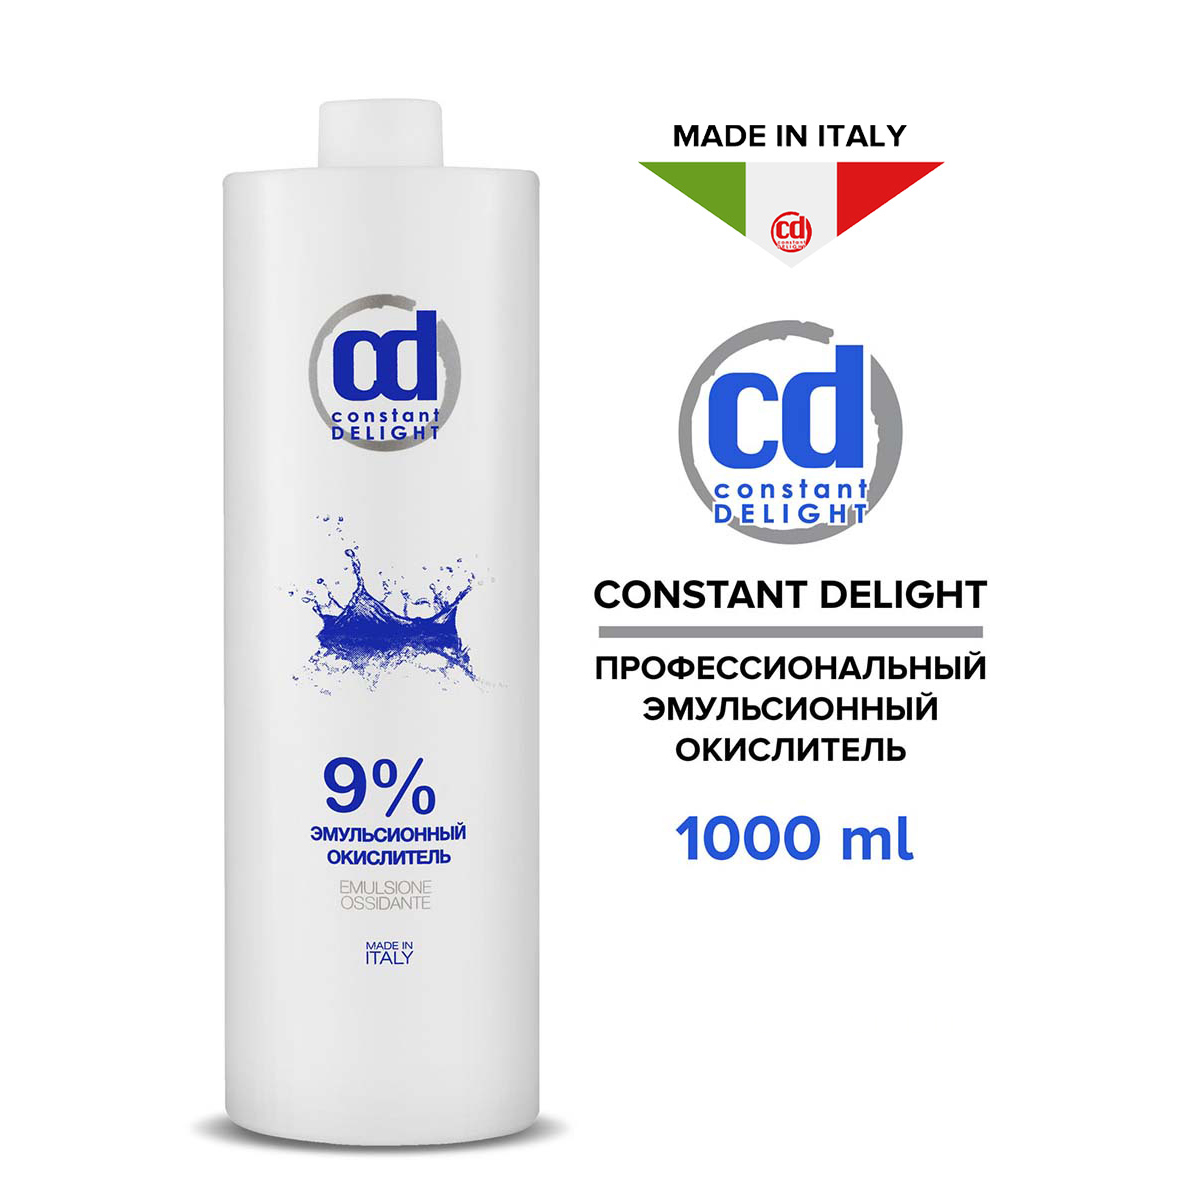 Проявитель Constant Delight Emulsione Ossidante 9% 1000 мл проявитель constant delight emulsione ossidante 12% 1000 мл